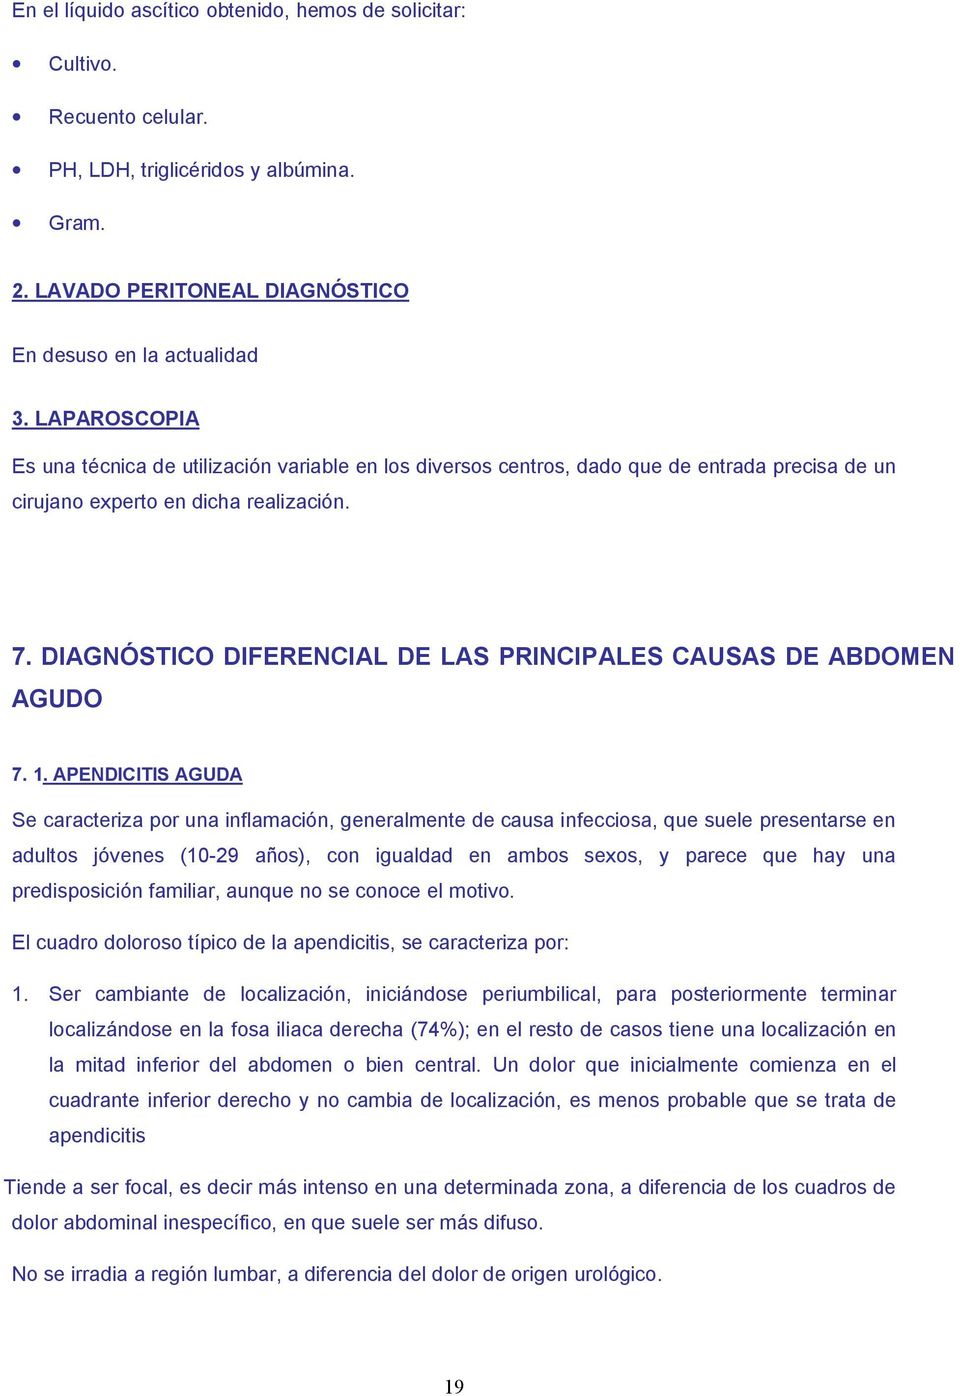 DIAGNÓSTICO DIFERENCIAL DE LAS PRINCIPALES CAUSAS DE ABDOMEN AGUDO 7. 1.